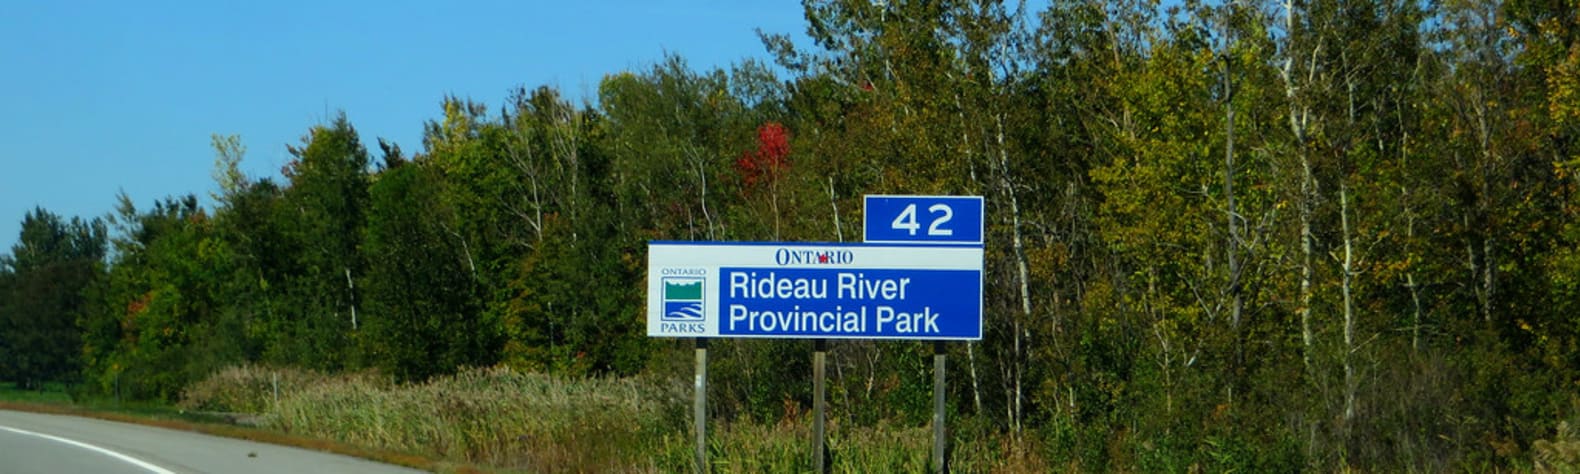 Rideau River Provincial Park